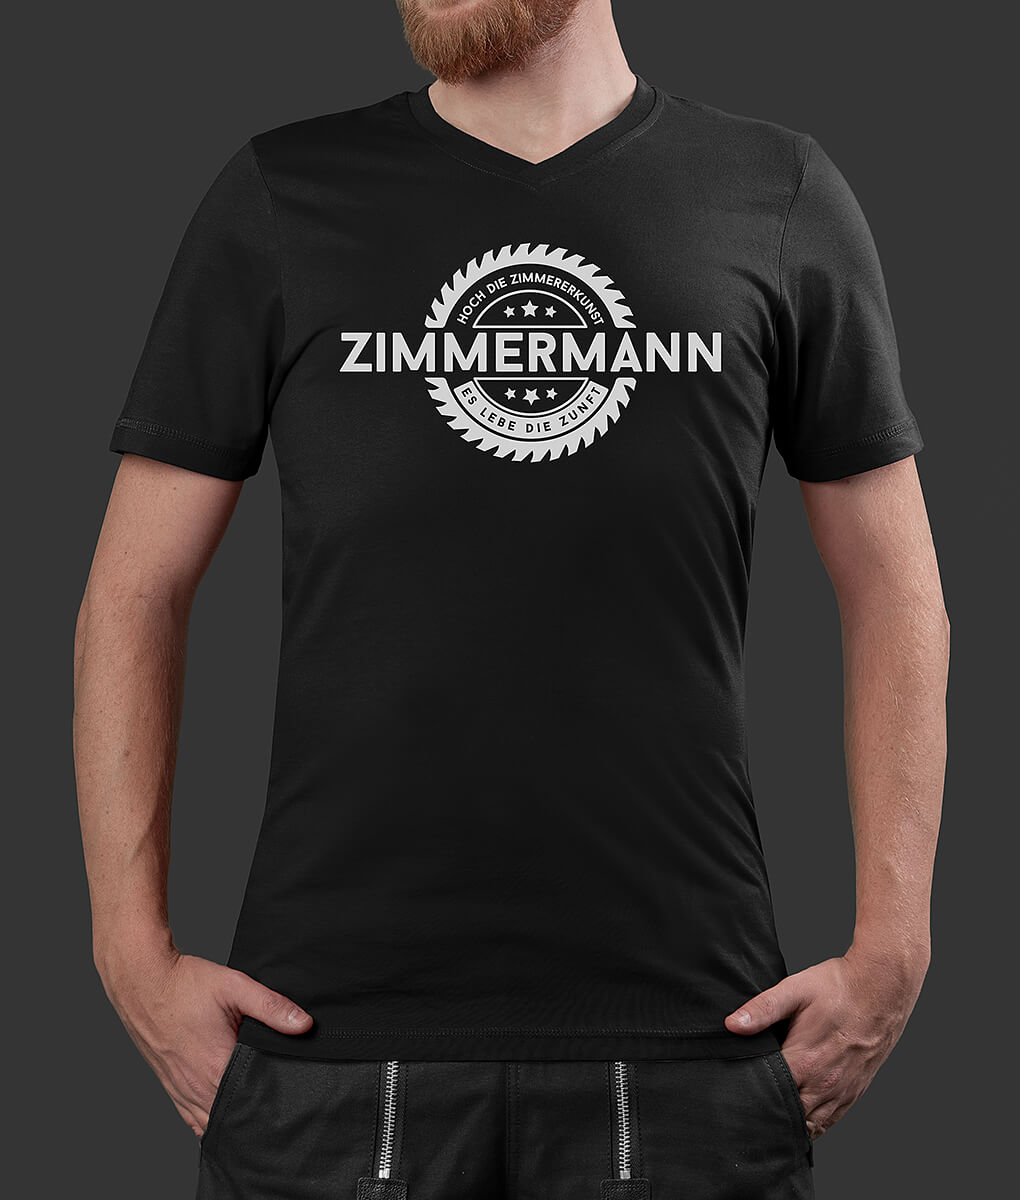 T-Shirt Philipp Säge Zimmermann Brust schwarz L